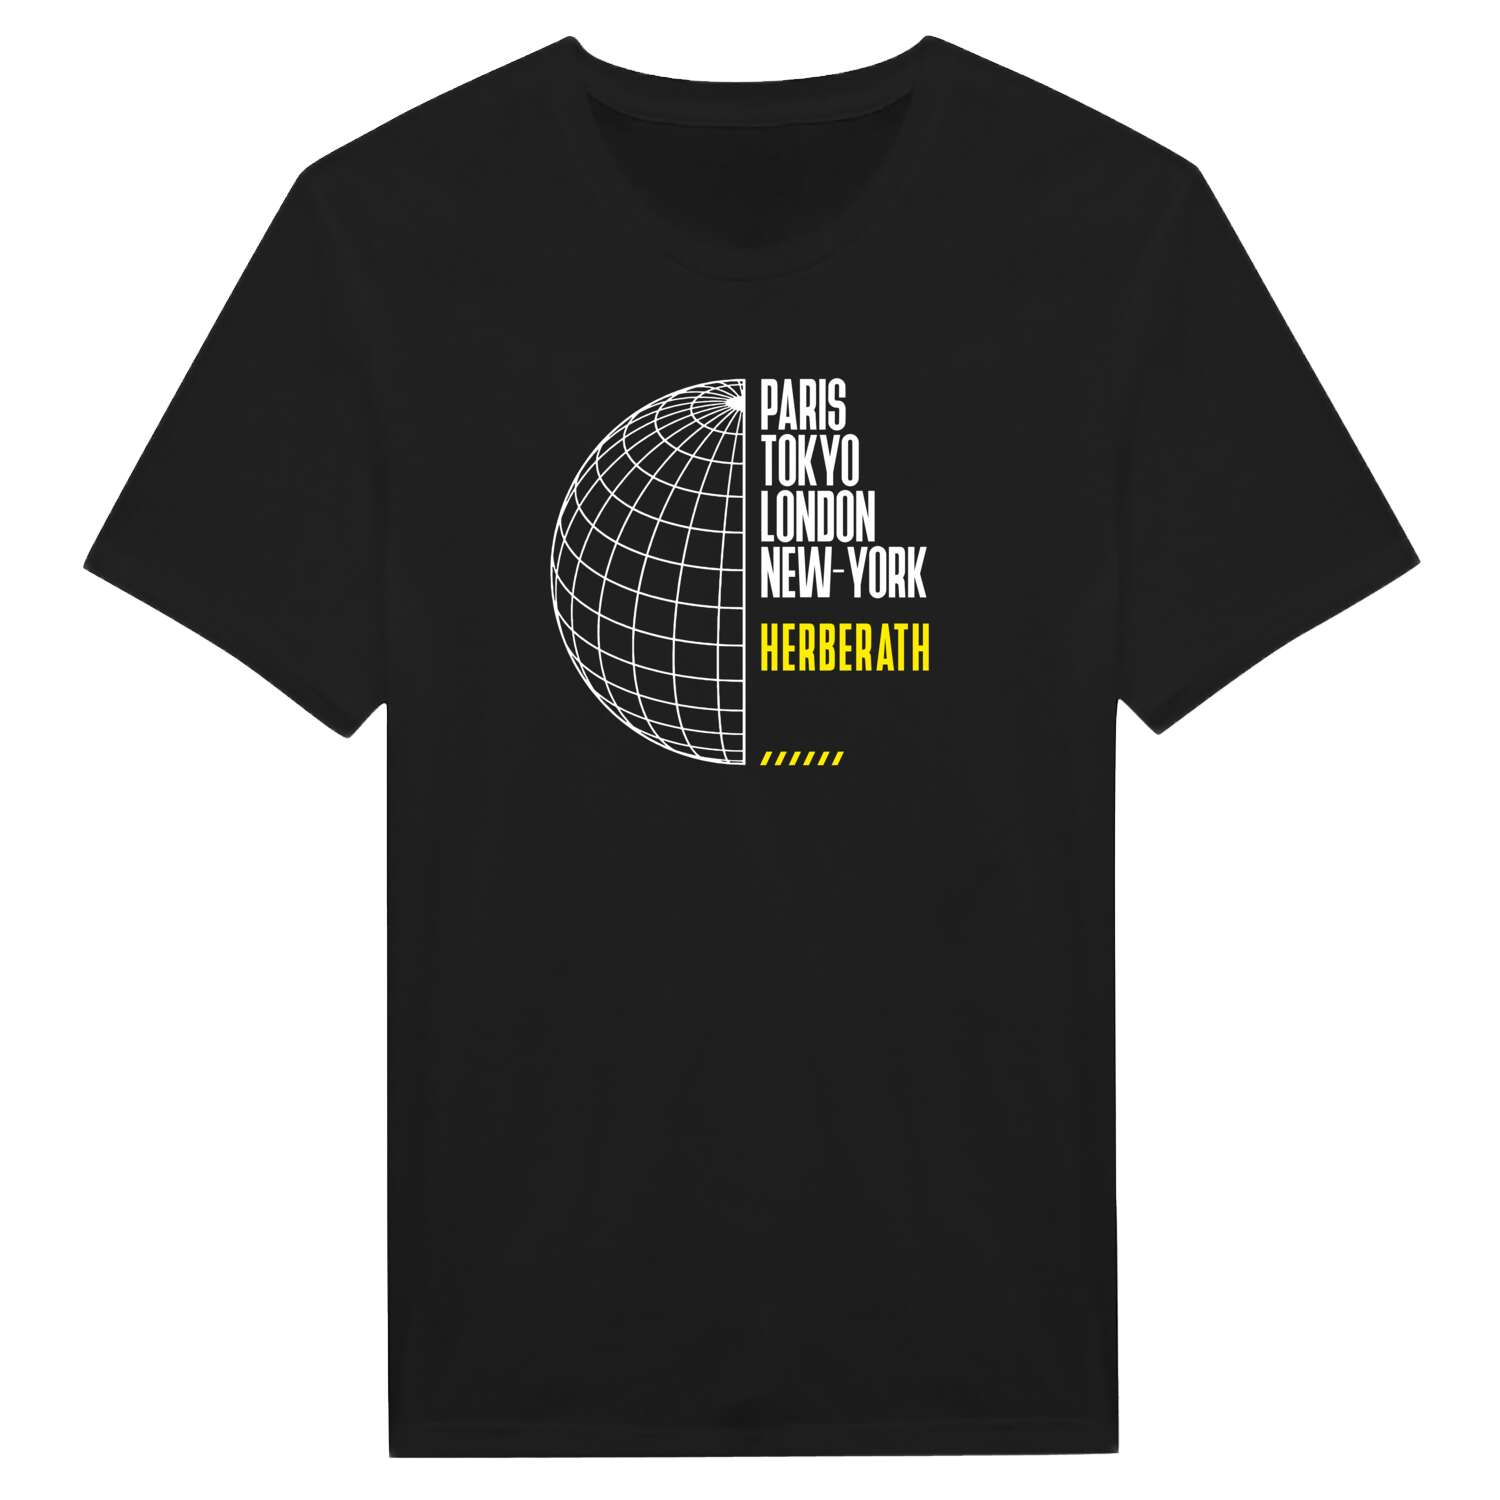 Herberath T-Shirt »Paris Tokyo London«